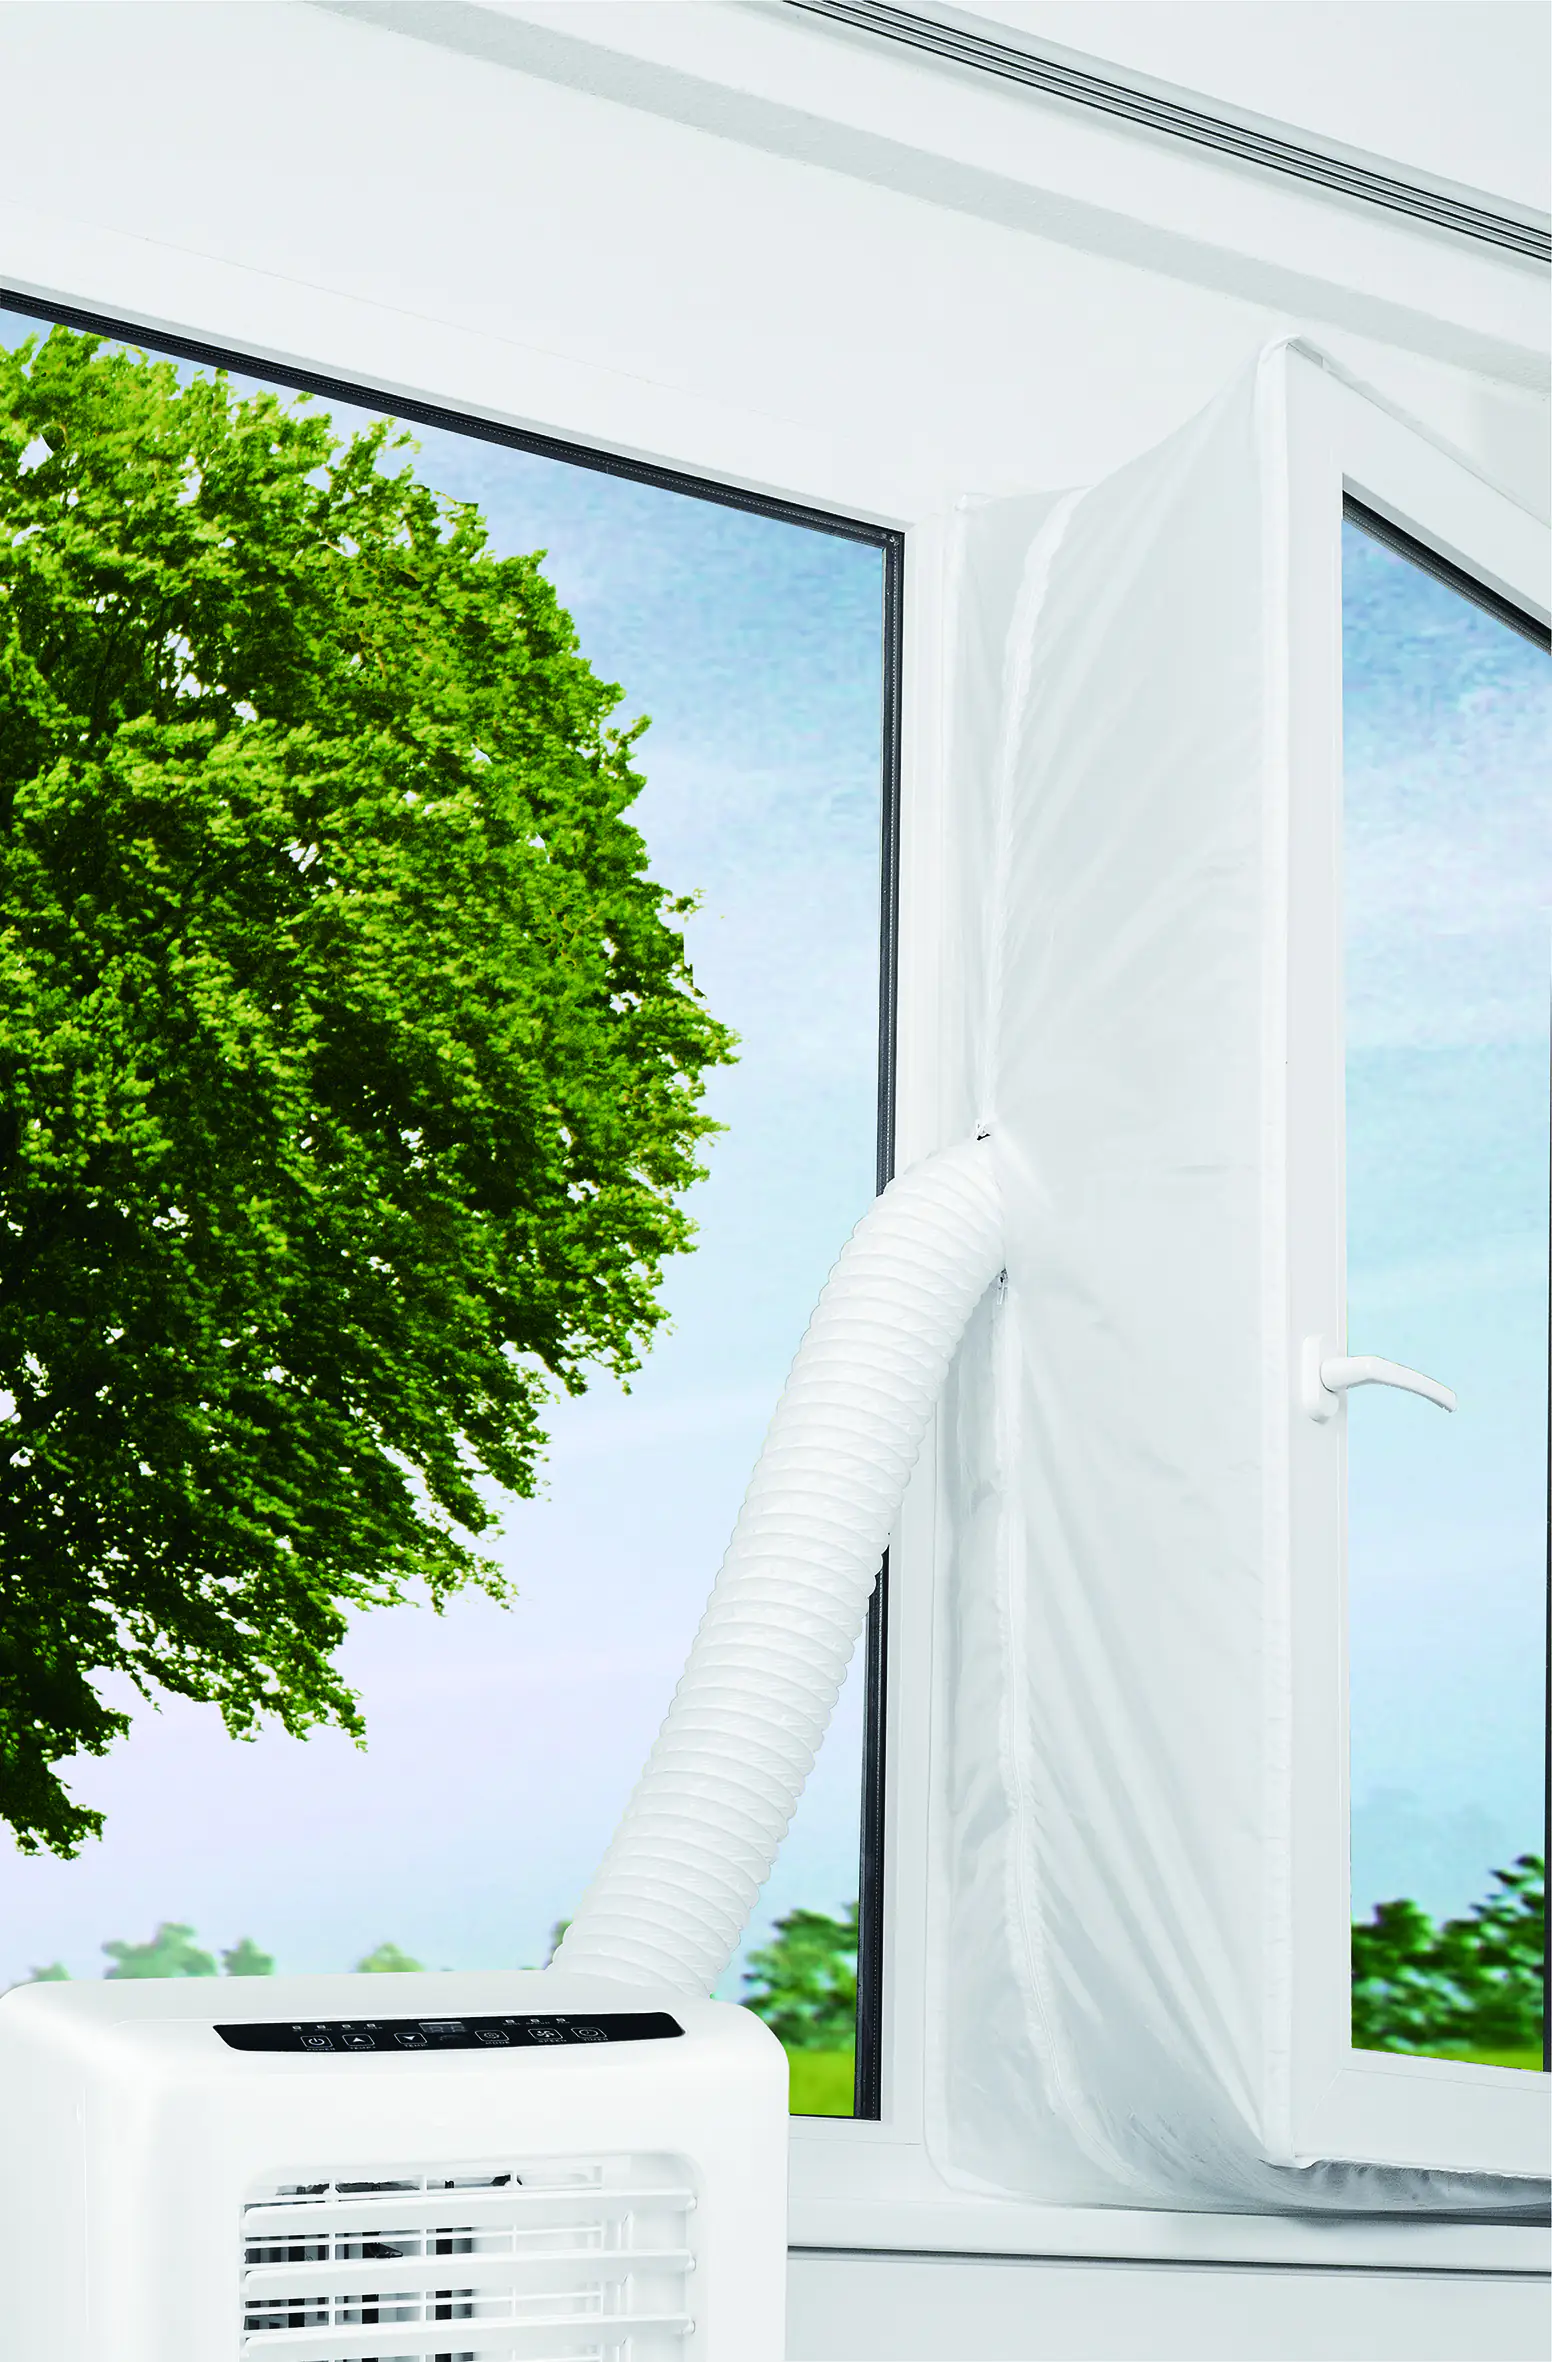 Fensterabdichtung Hot Air Stop für mobile Klimageräte kaufen